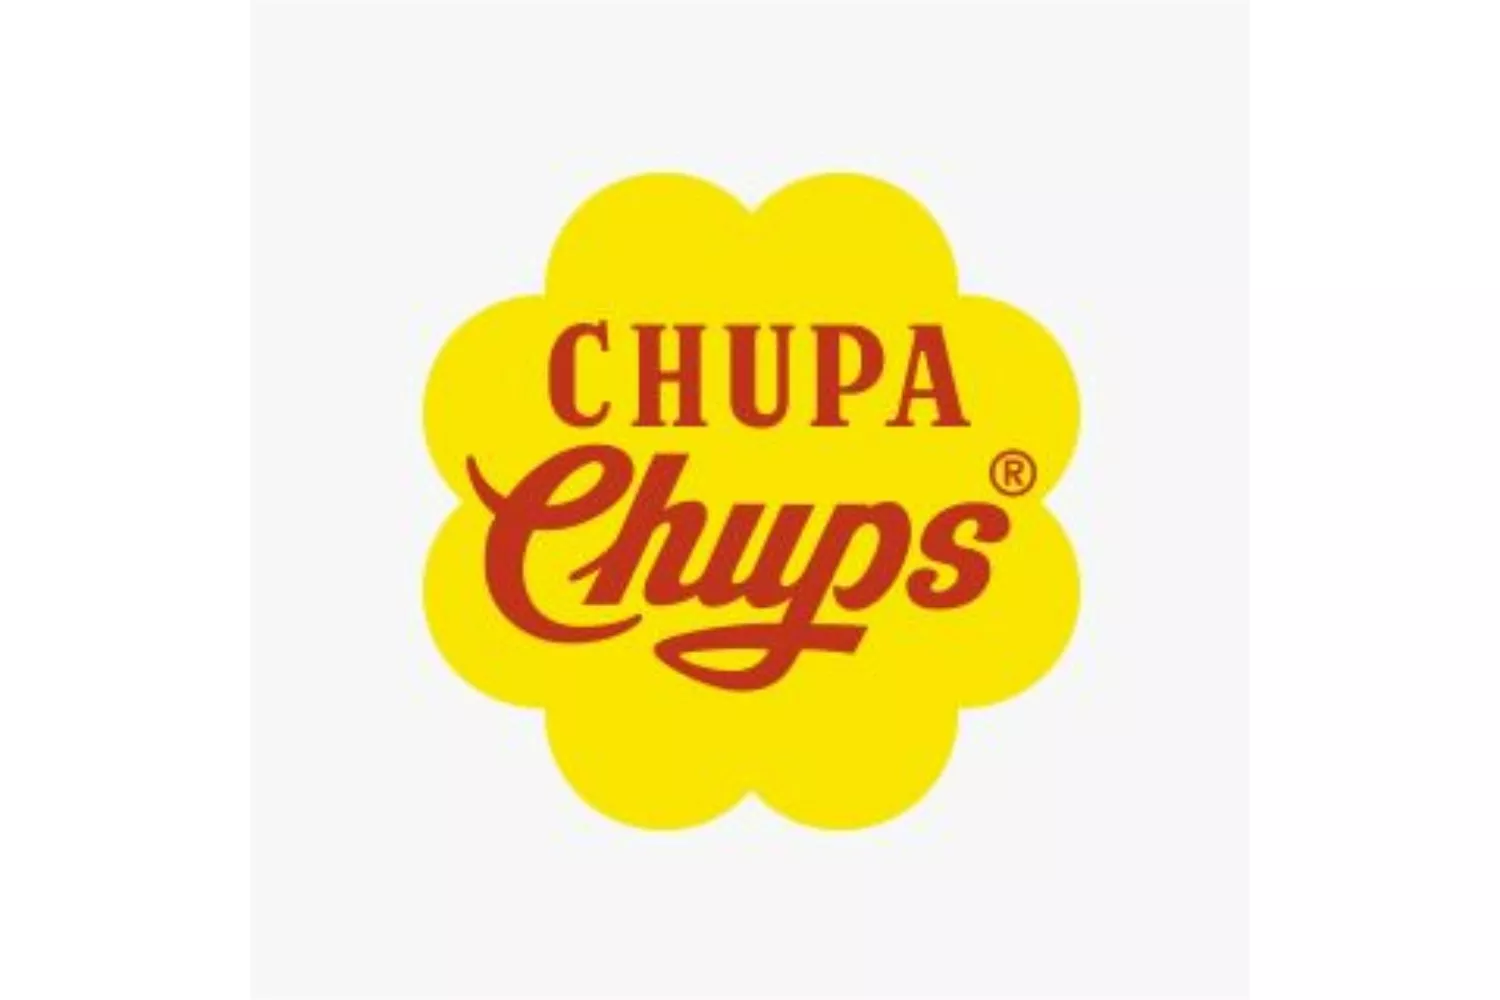 Logo de Chupa Chups diseñado por Salvador Dalí